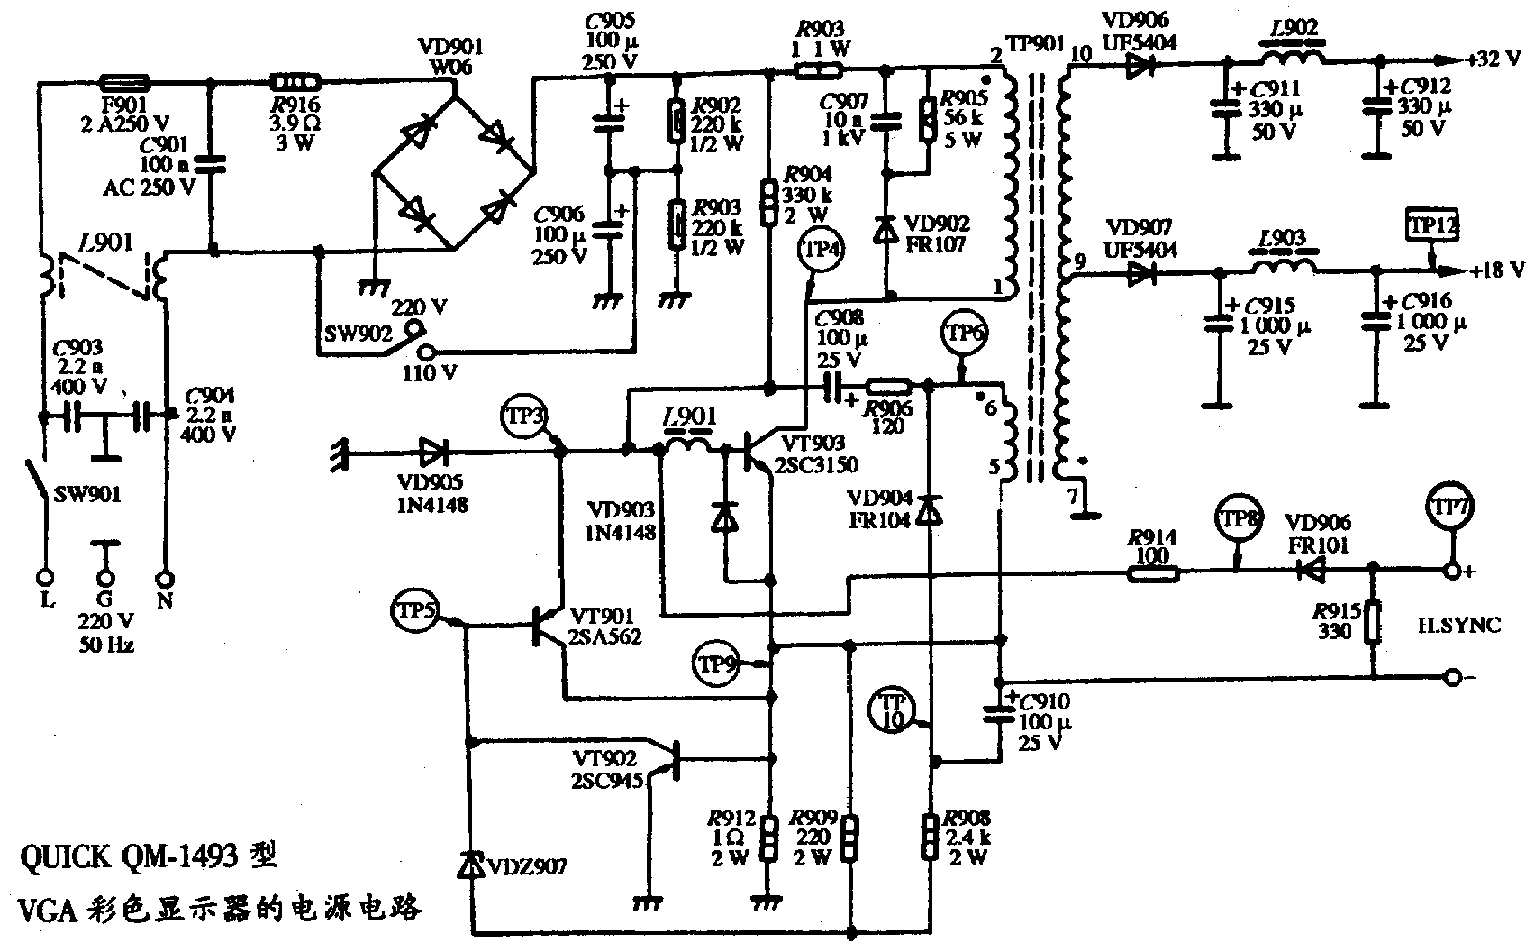 QUICK QM-1493型VGA彩色顯示器的電源電路圖